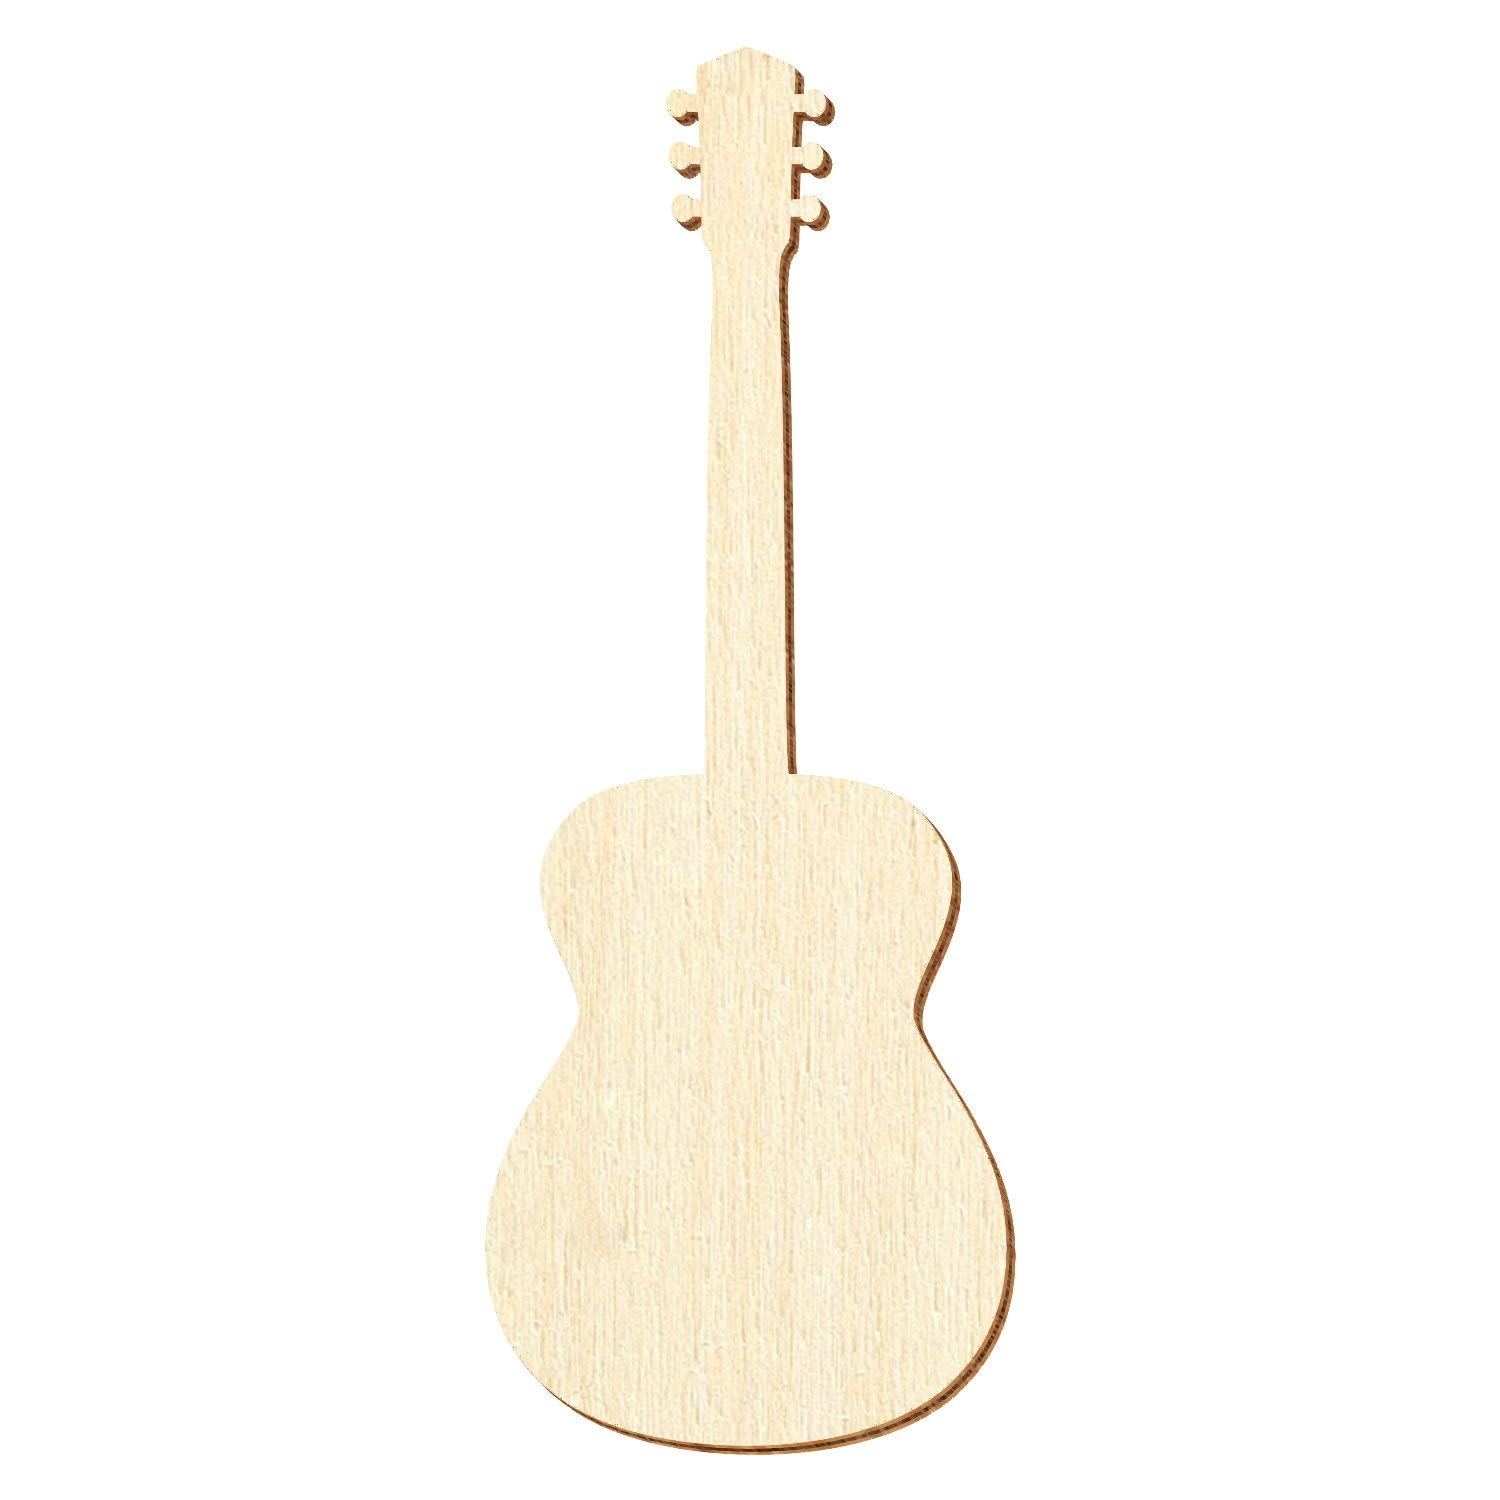 Holz Akustikgitarre - Deko Zuschnitte Größenauswahl, Pack mit:25 Stück, Größe:38cm